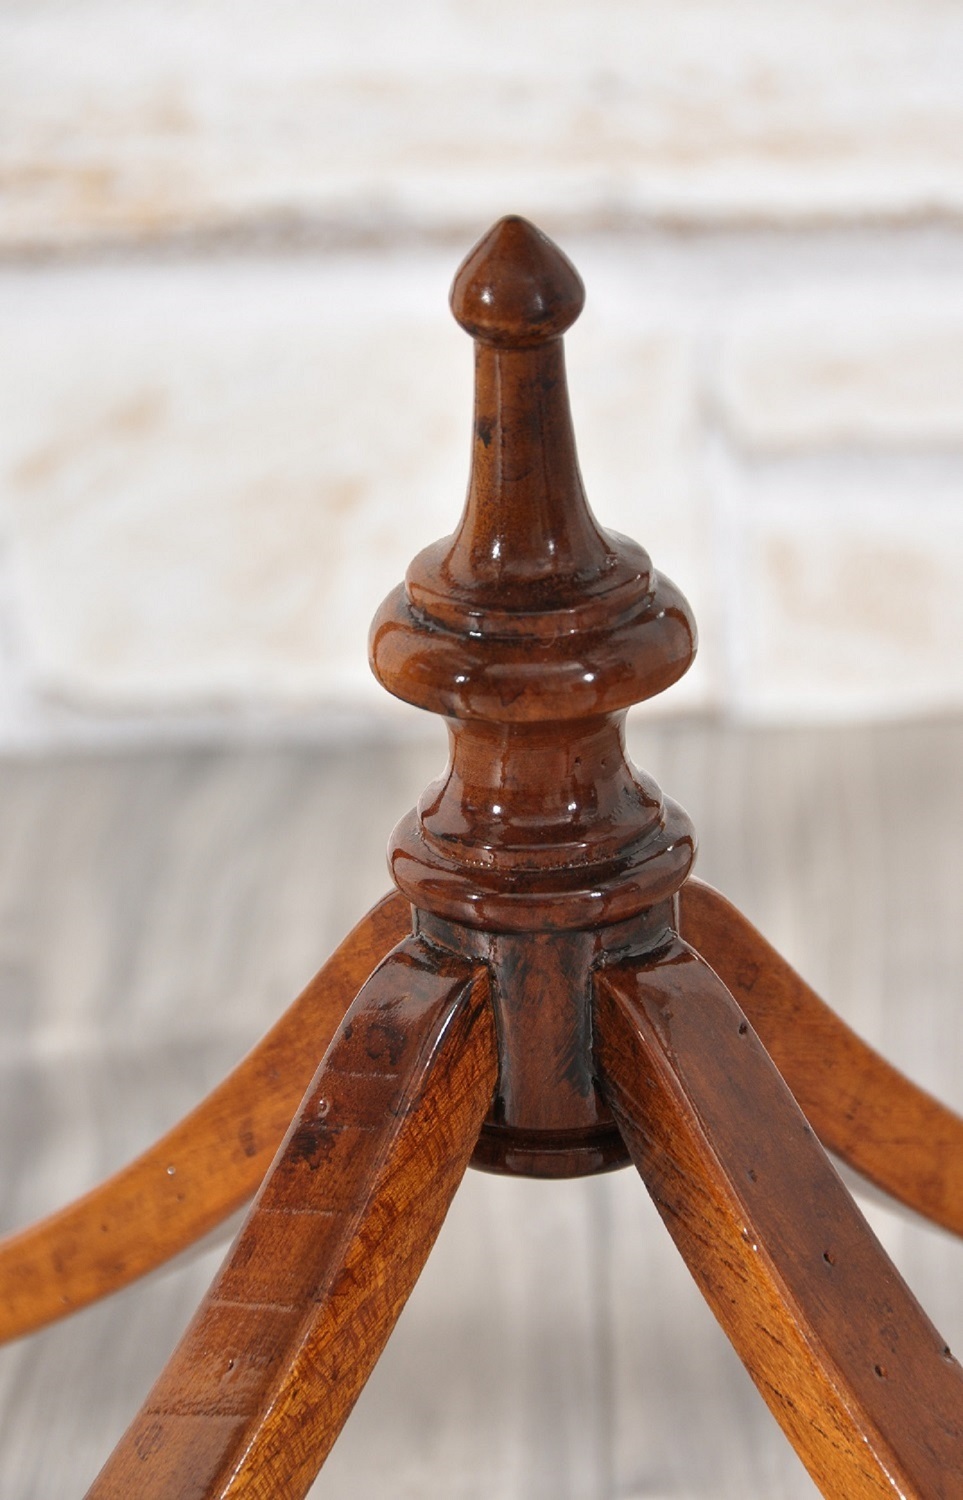 il brand Vangelista mobili ha realizzato il tavolo da salotto tornito a mano con legni pregiati costruito e intarsiato in stile Impero nel laboratorio di alta ebanisteria Vangelista mobili